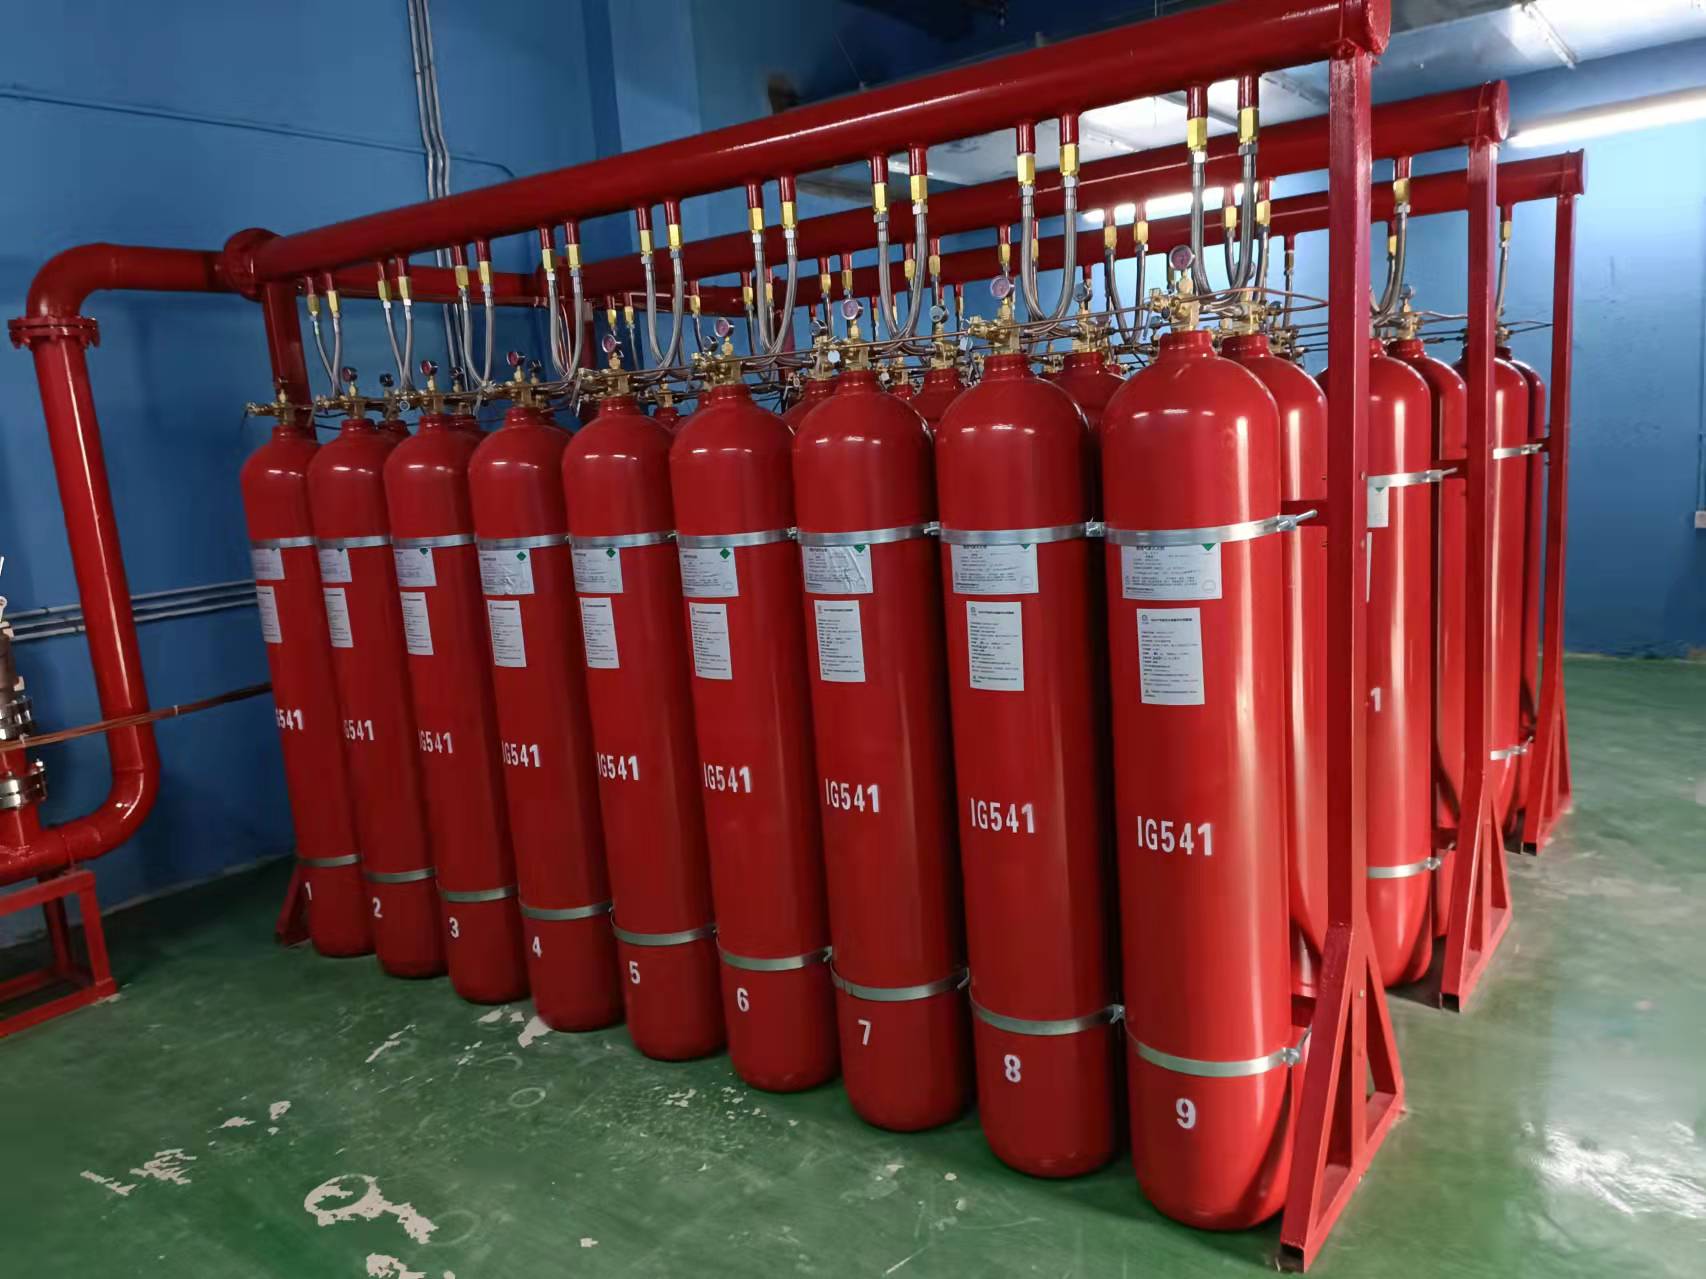  ig541混合气体灭火系统的气体储存要求